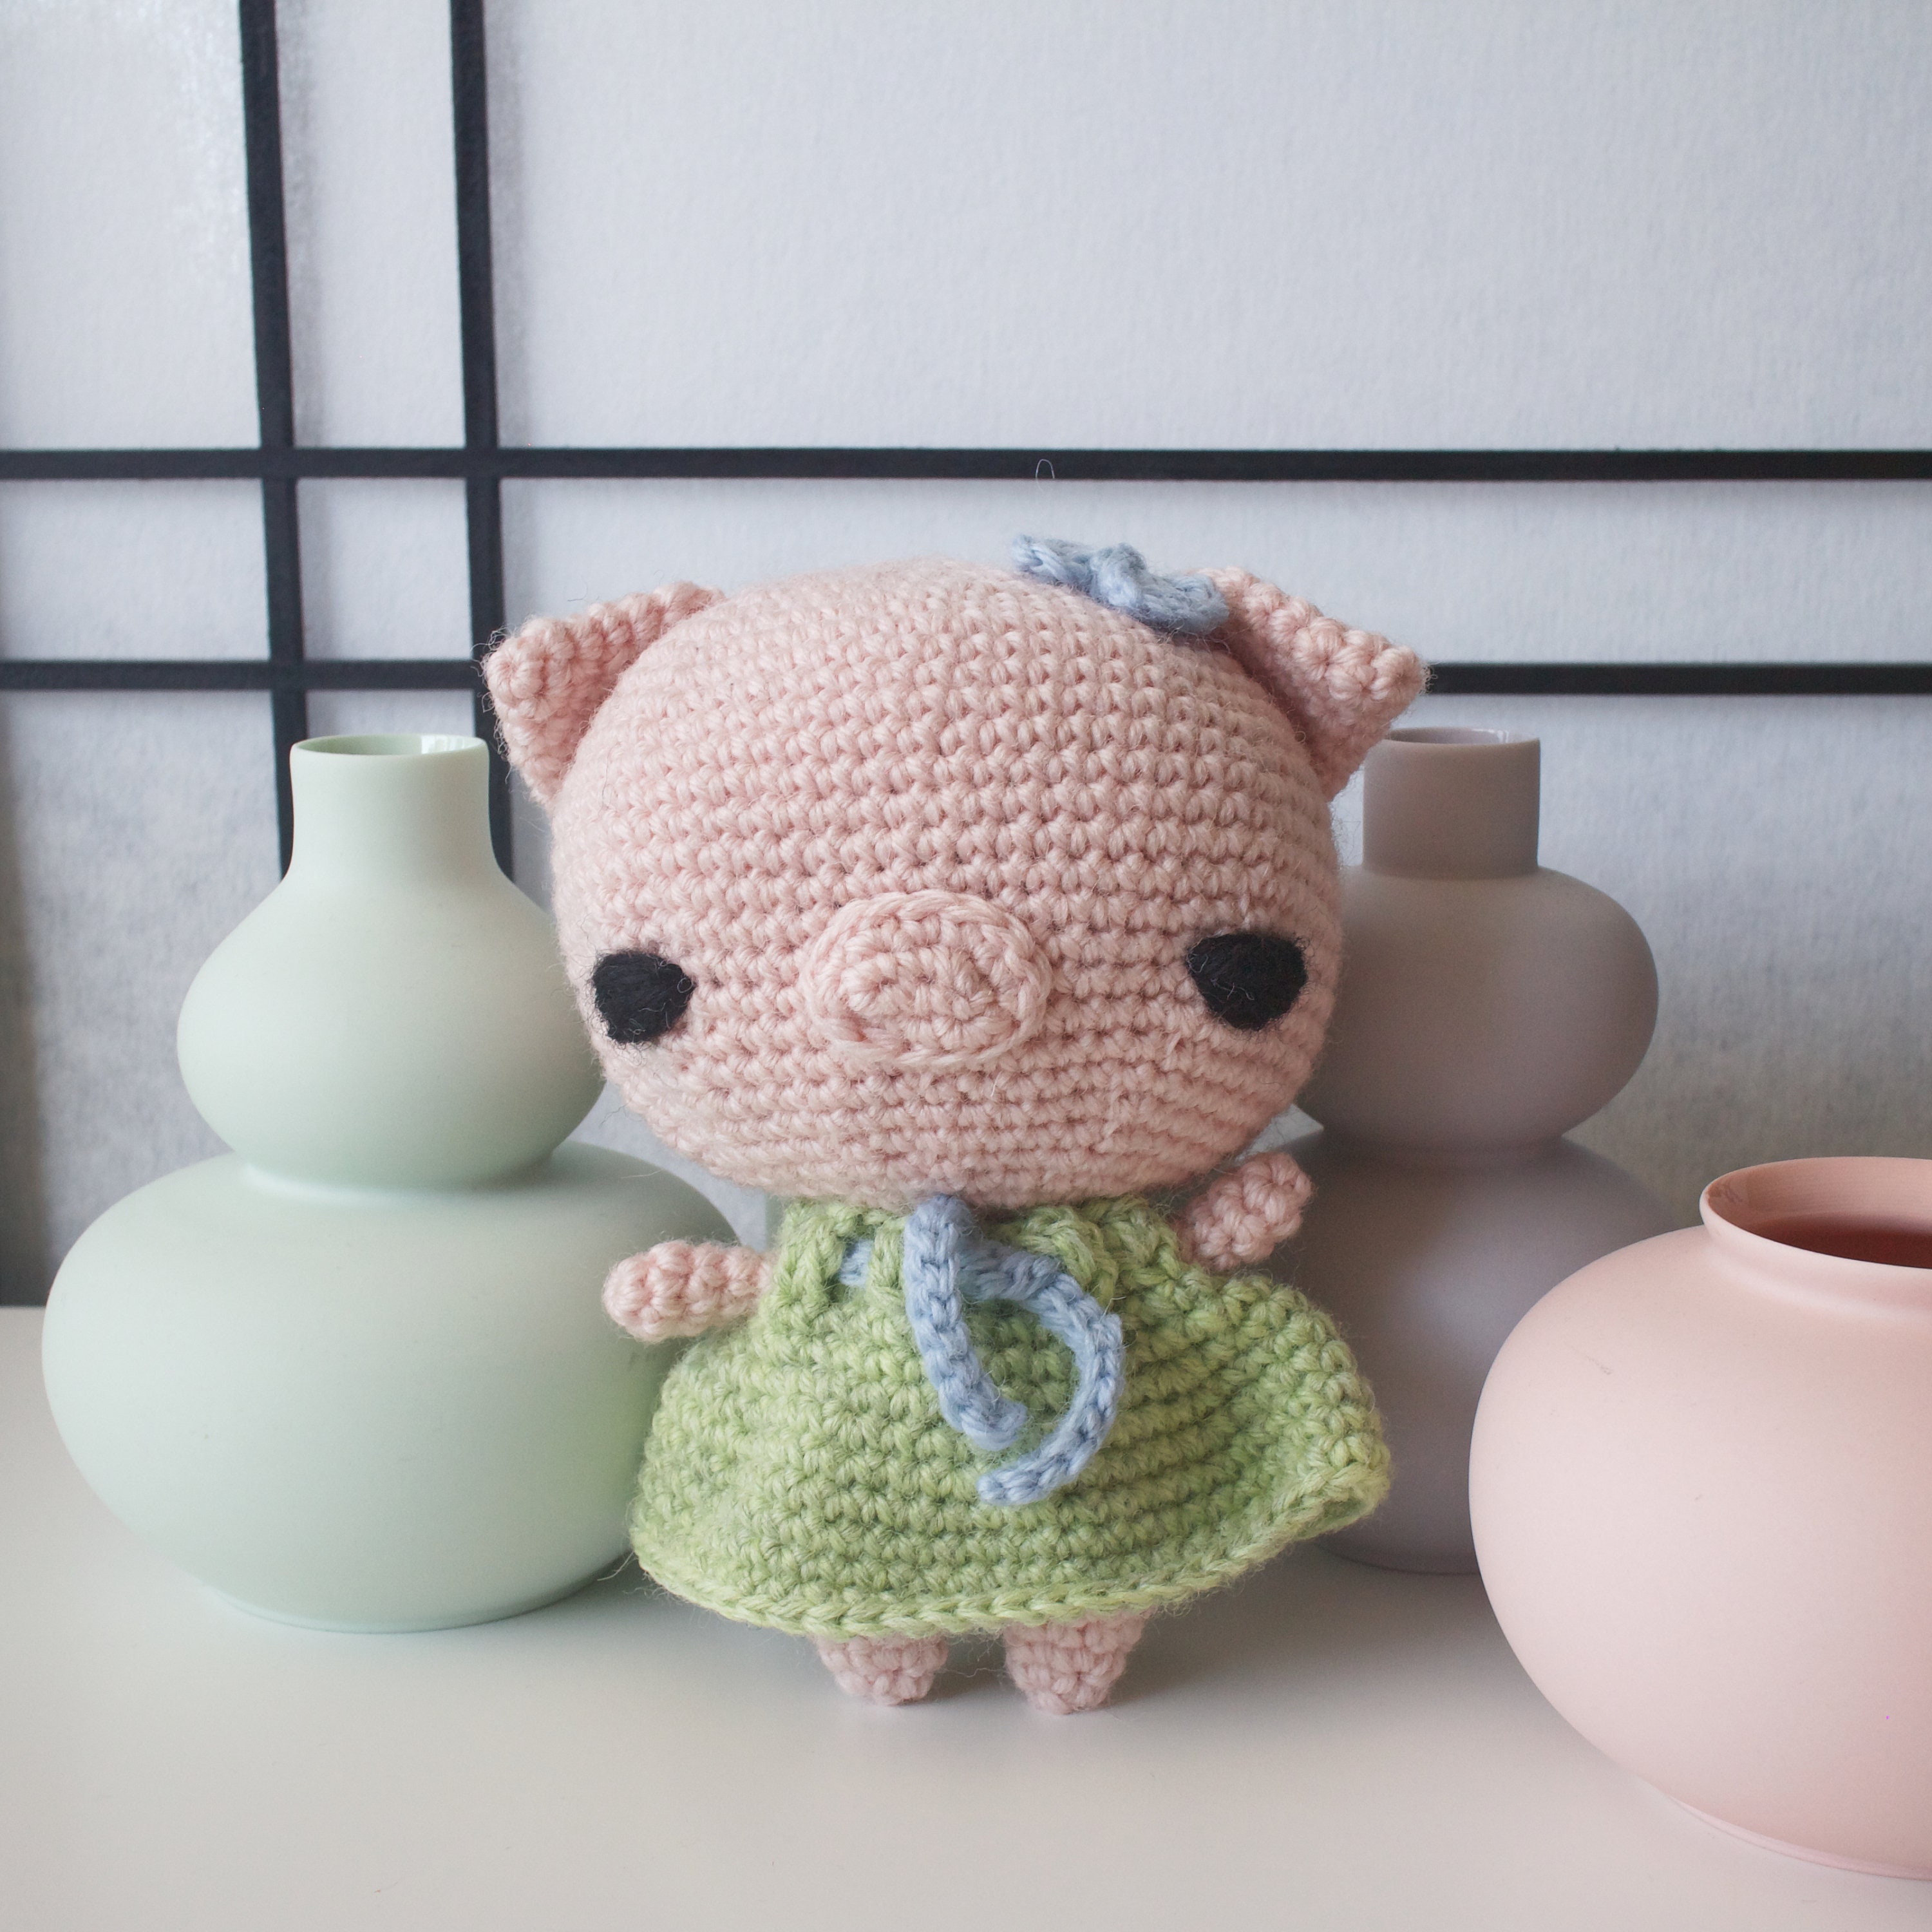 Piggy Crochet Kit. Crochet Kit. Crochet Materials. Crochet Pattern.  Amigurumi Crochet. Amigurumi Crochet Pattern. Amigurumi Doll. 